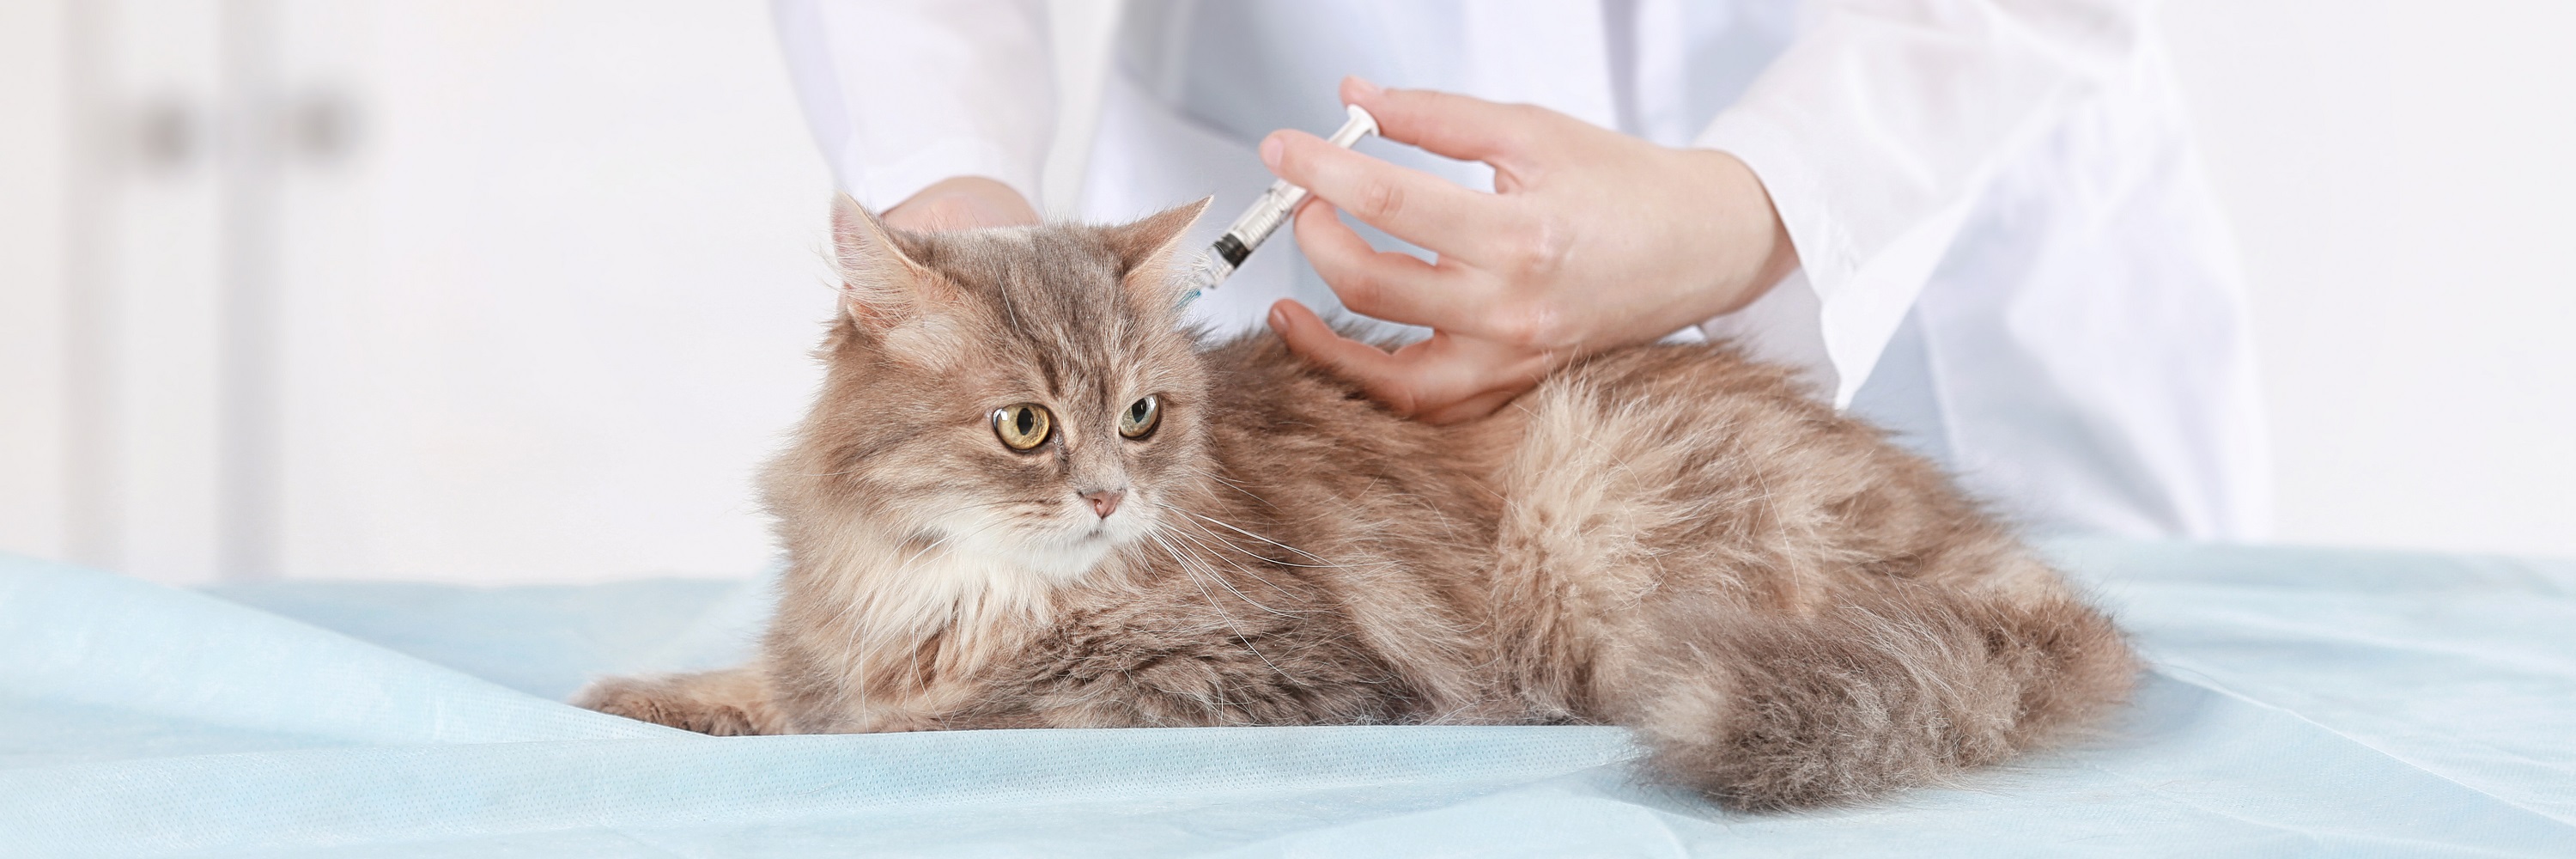 kitten vaccination cost australia